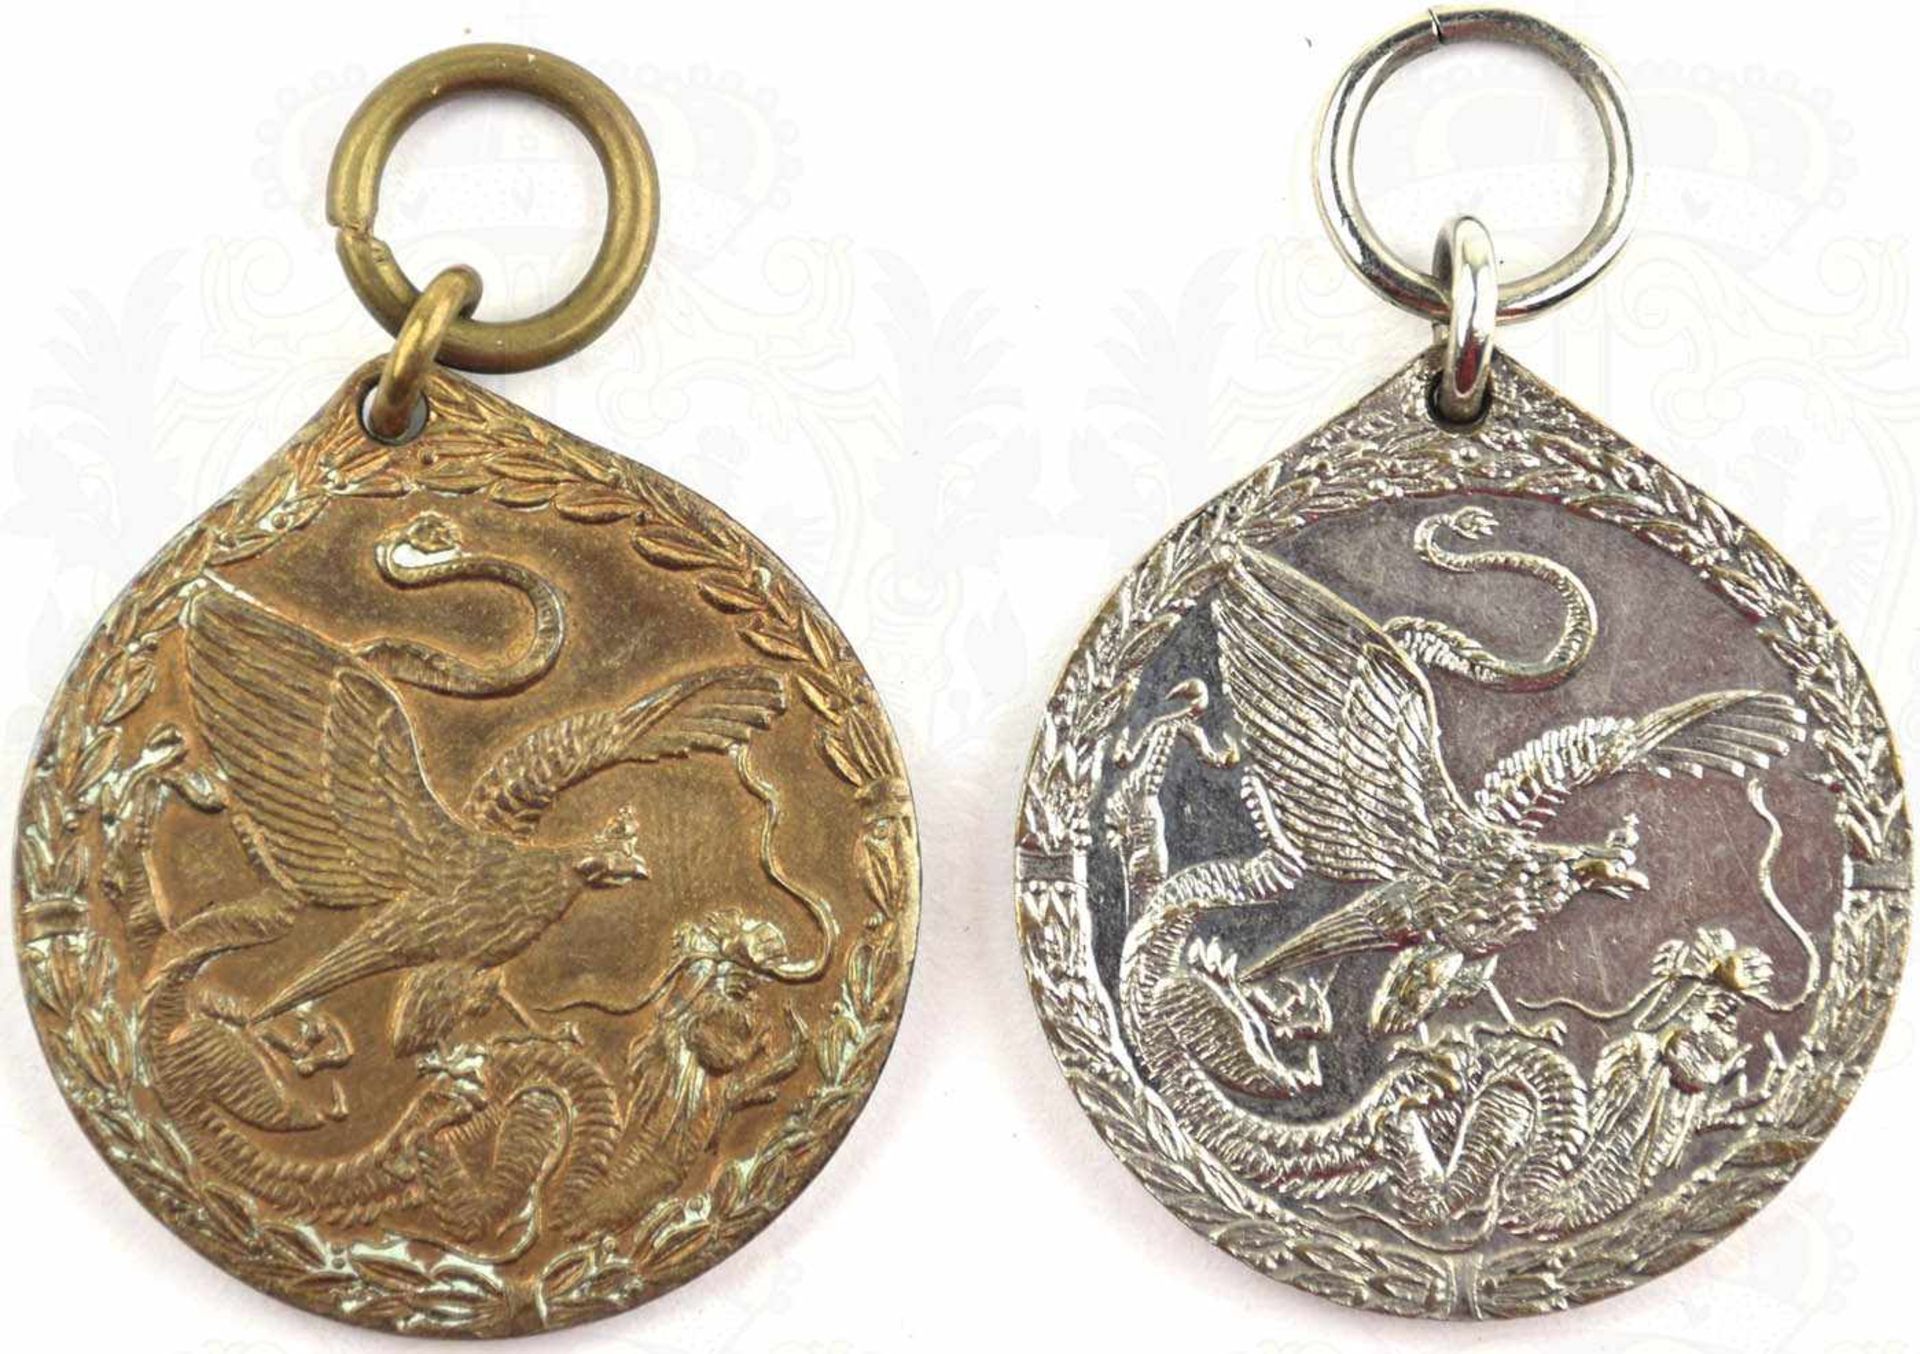 2 CHINA-DENKMÜNZEN 1901, für Kämpfer, Buntmetall m. geringen Resten der Vergoldung; dto. für - Bild 2 aus 2